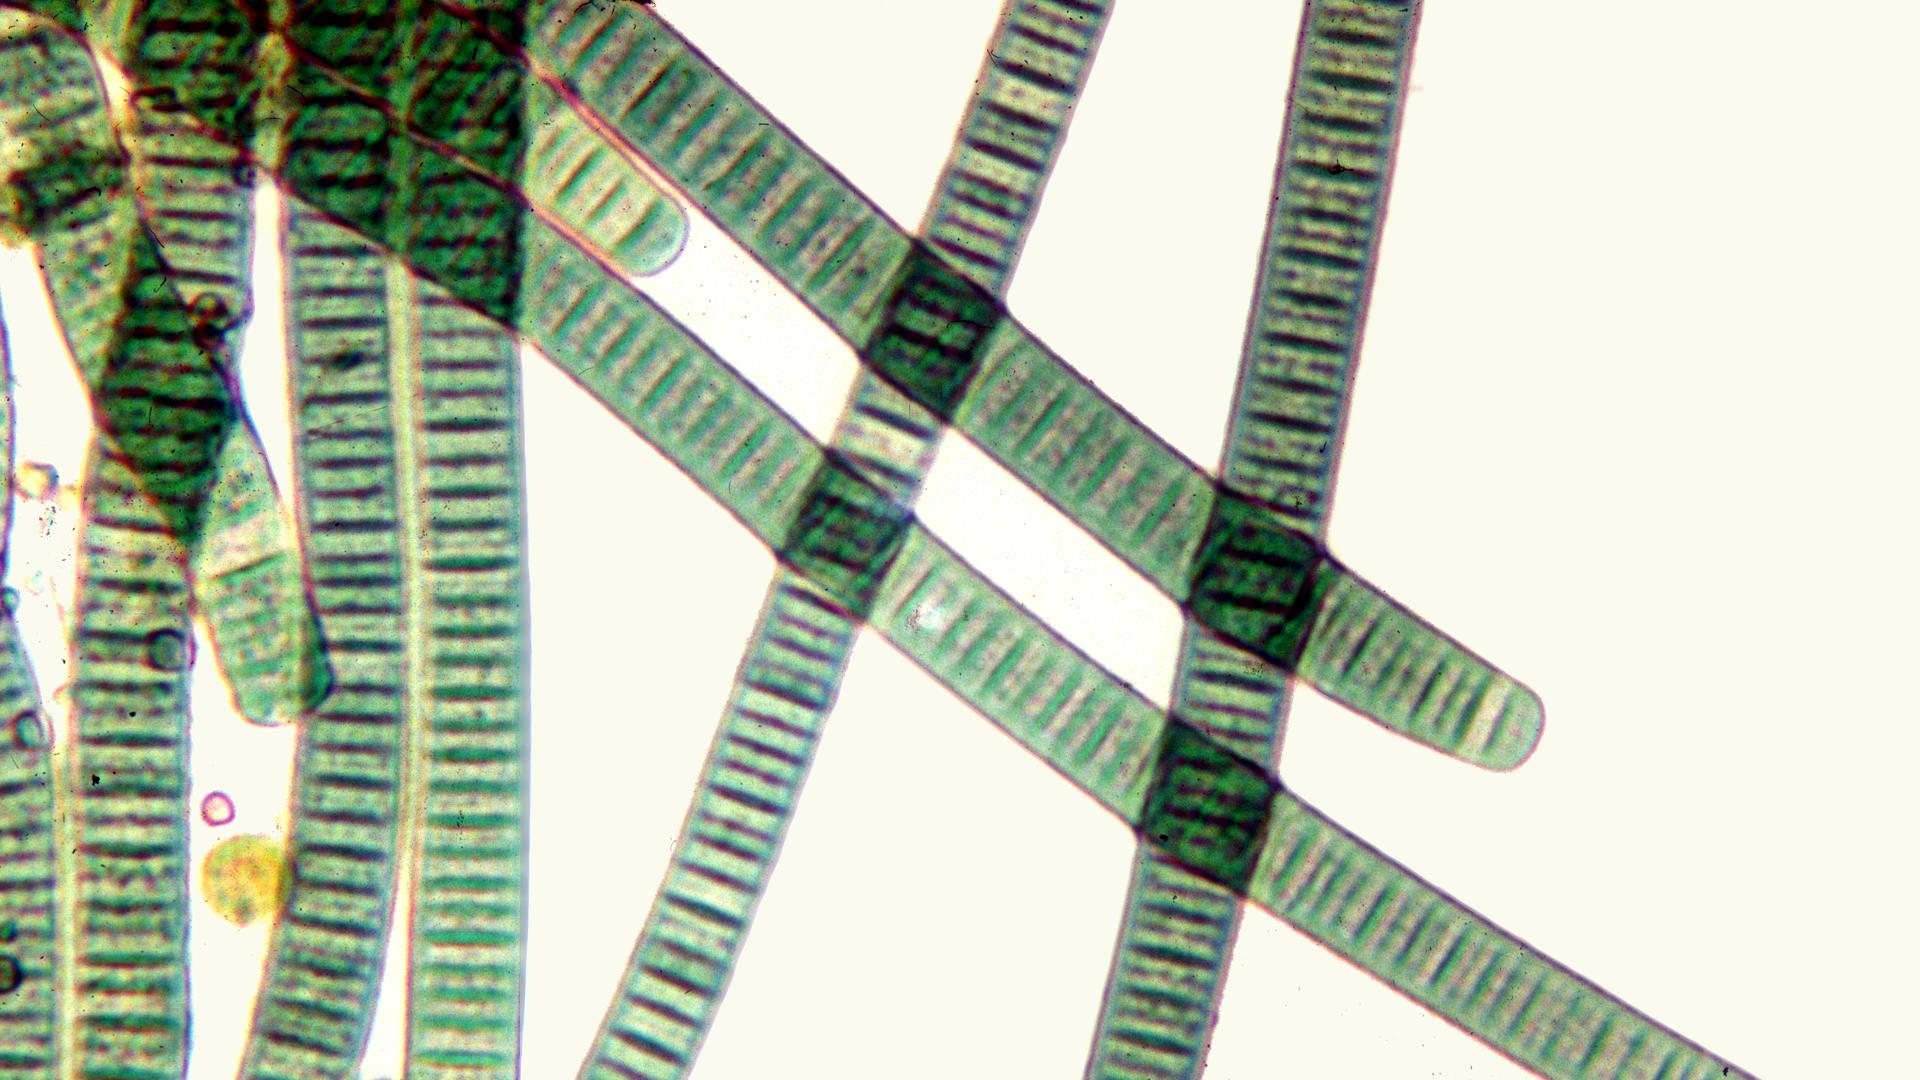 Oscillatoria Under A Microscope